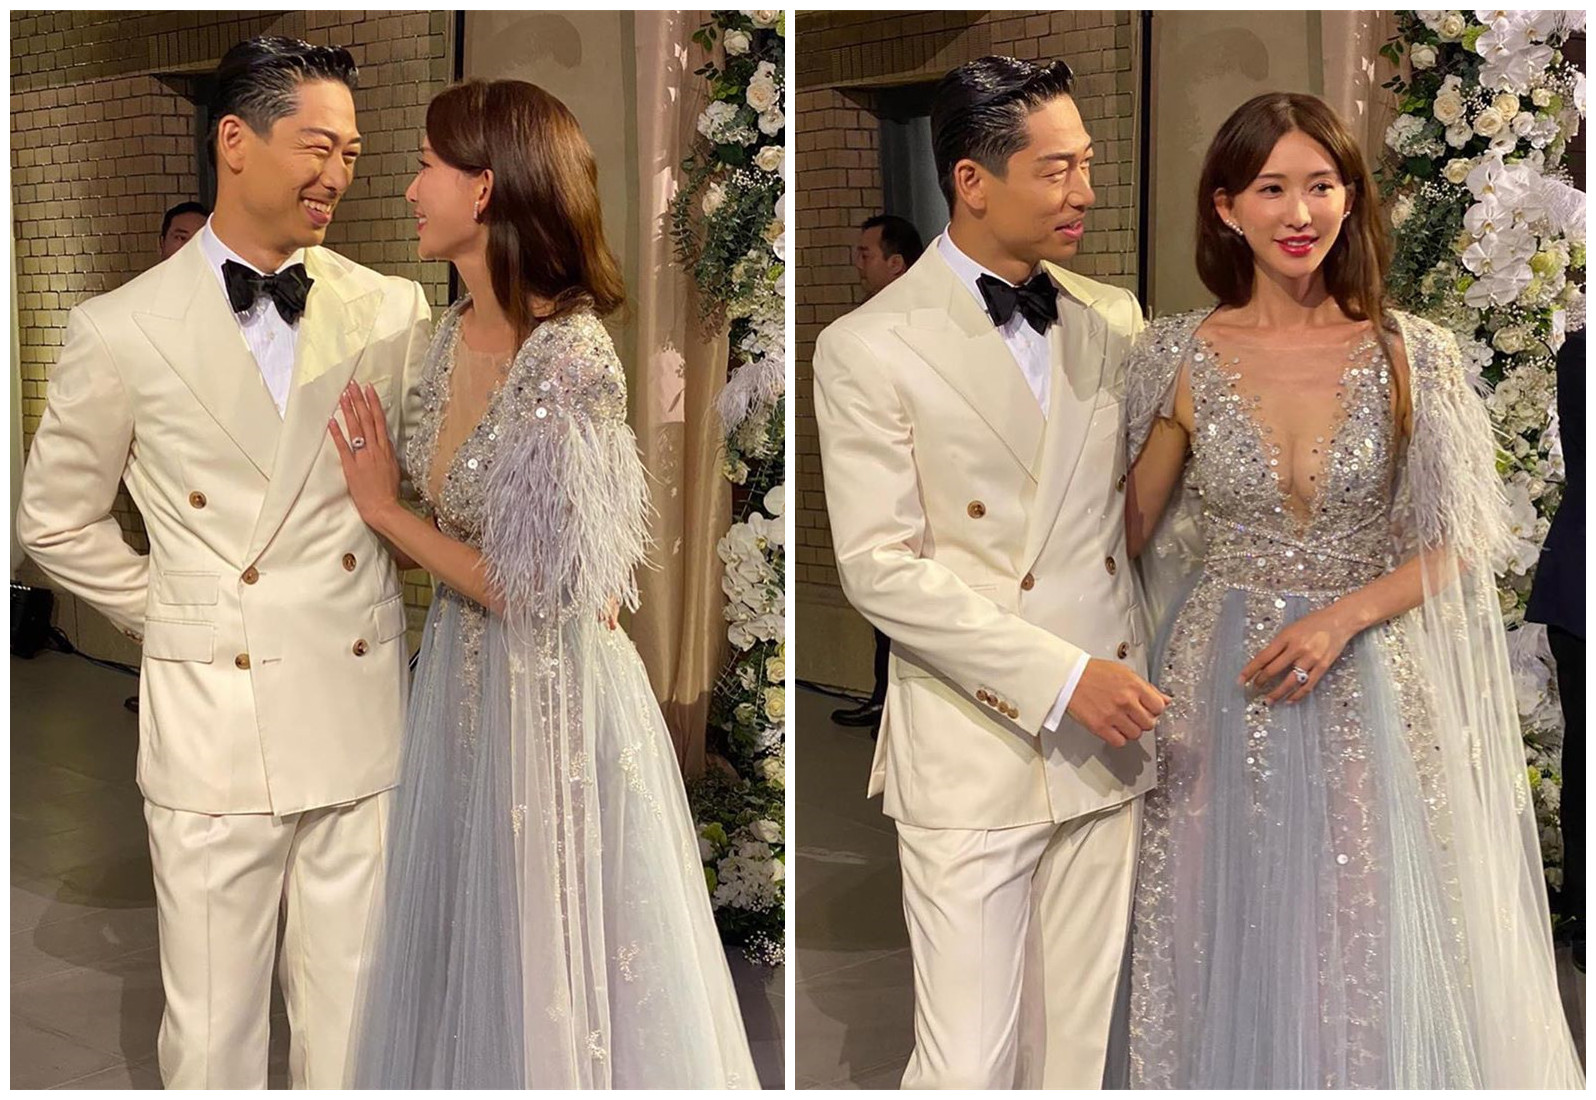 林志玲的婚礼太朴素了？但是，礼服都很漂亮，3万个灰姑娘的水晶鞋比起订婚戒指更会抢夺镜子。